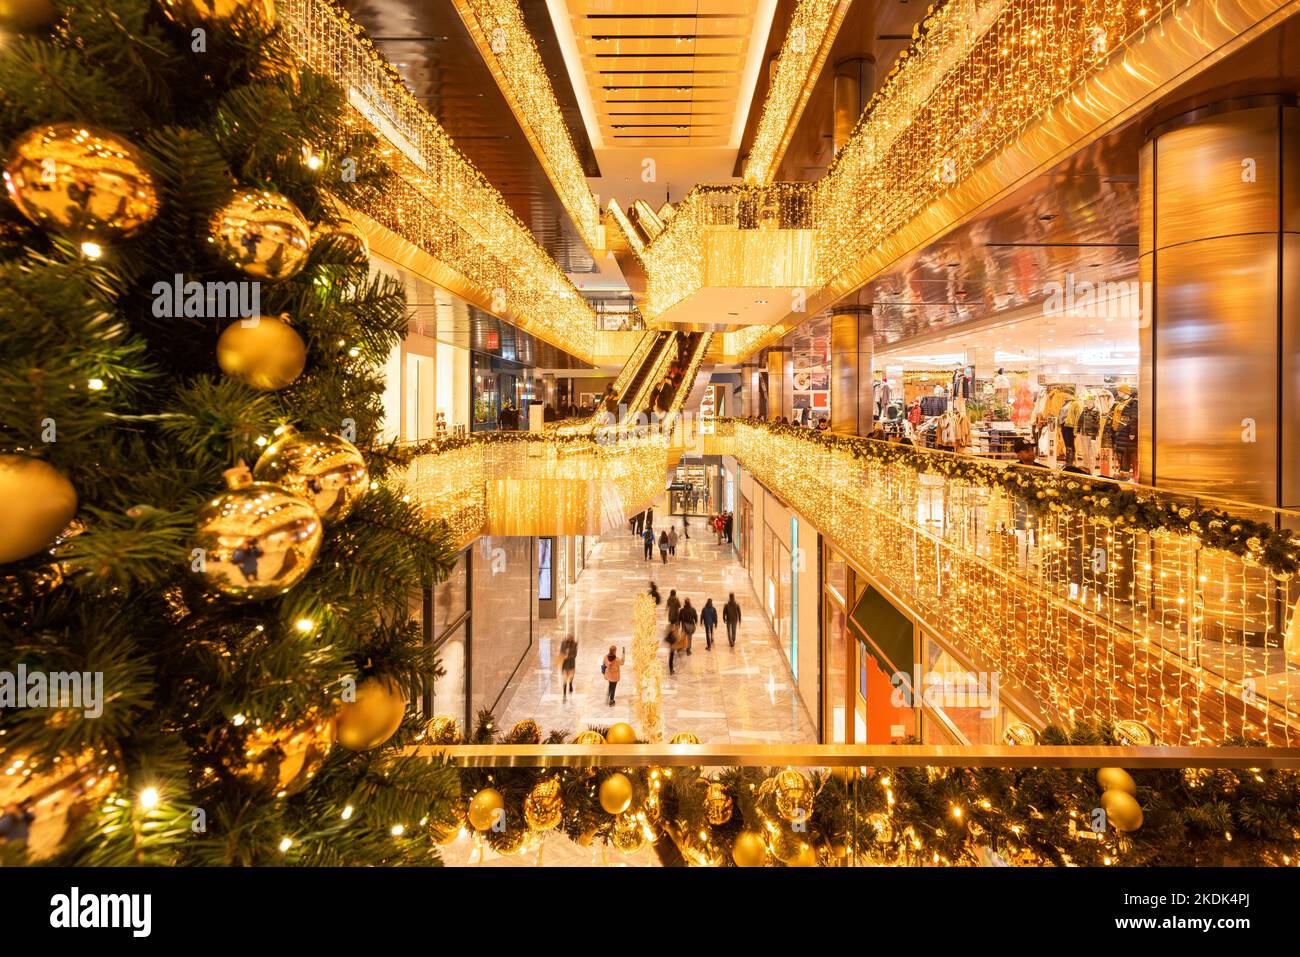 Centro comercial Hudson Yards con decoraciones navideñas iluminadas por la noche. Midtown Manhattan, Nueva York Foto de stock